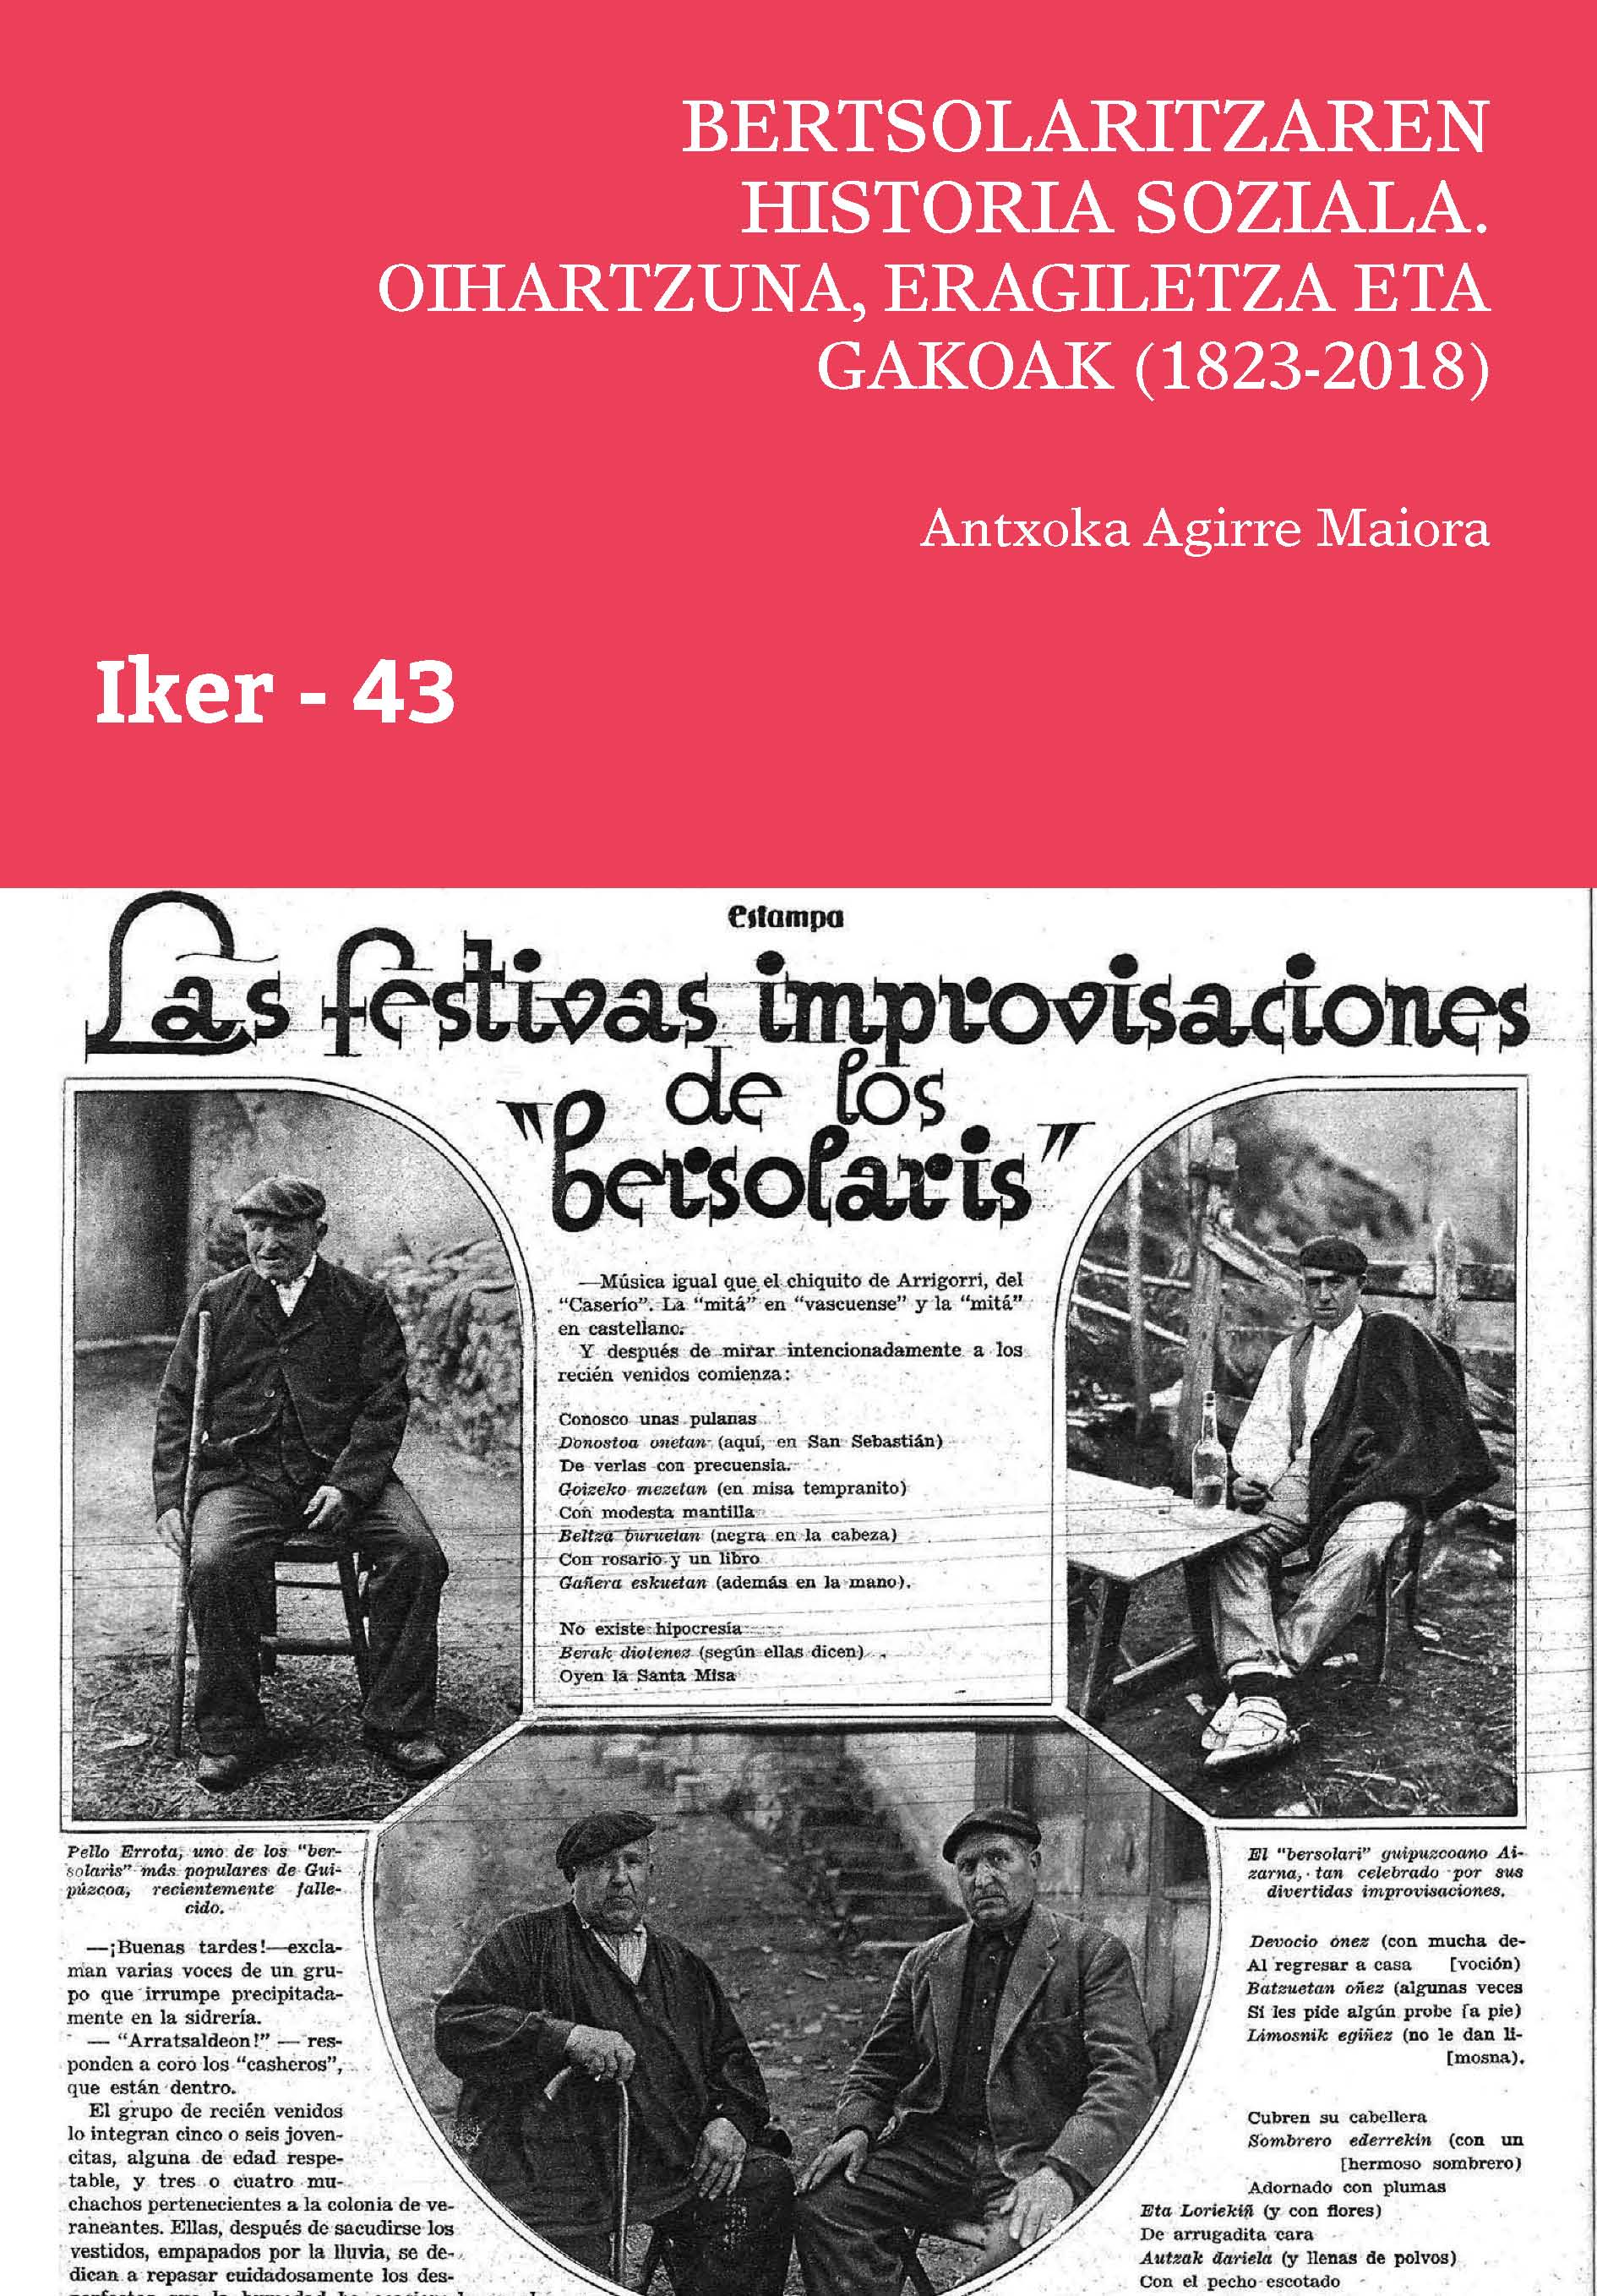 Bertsolaritzaren historia soziala: oihartzuna, eragiletza eta gakoak (1823-2018)